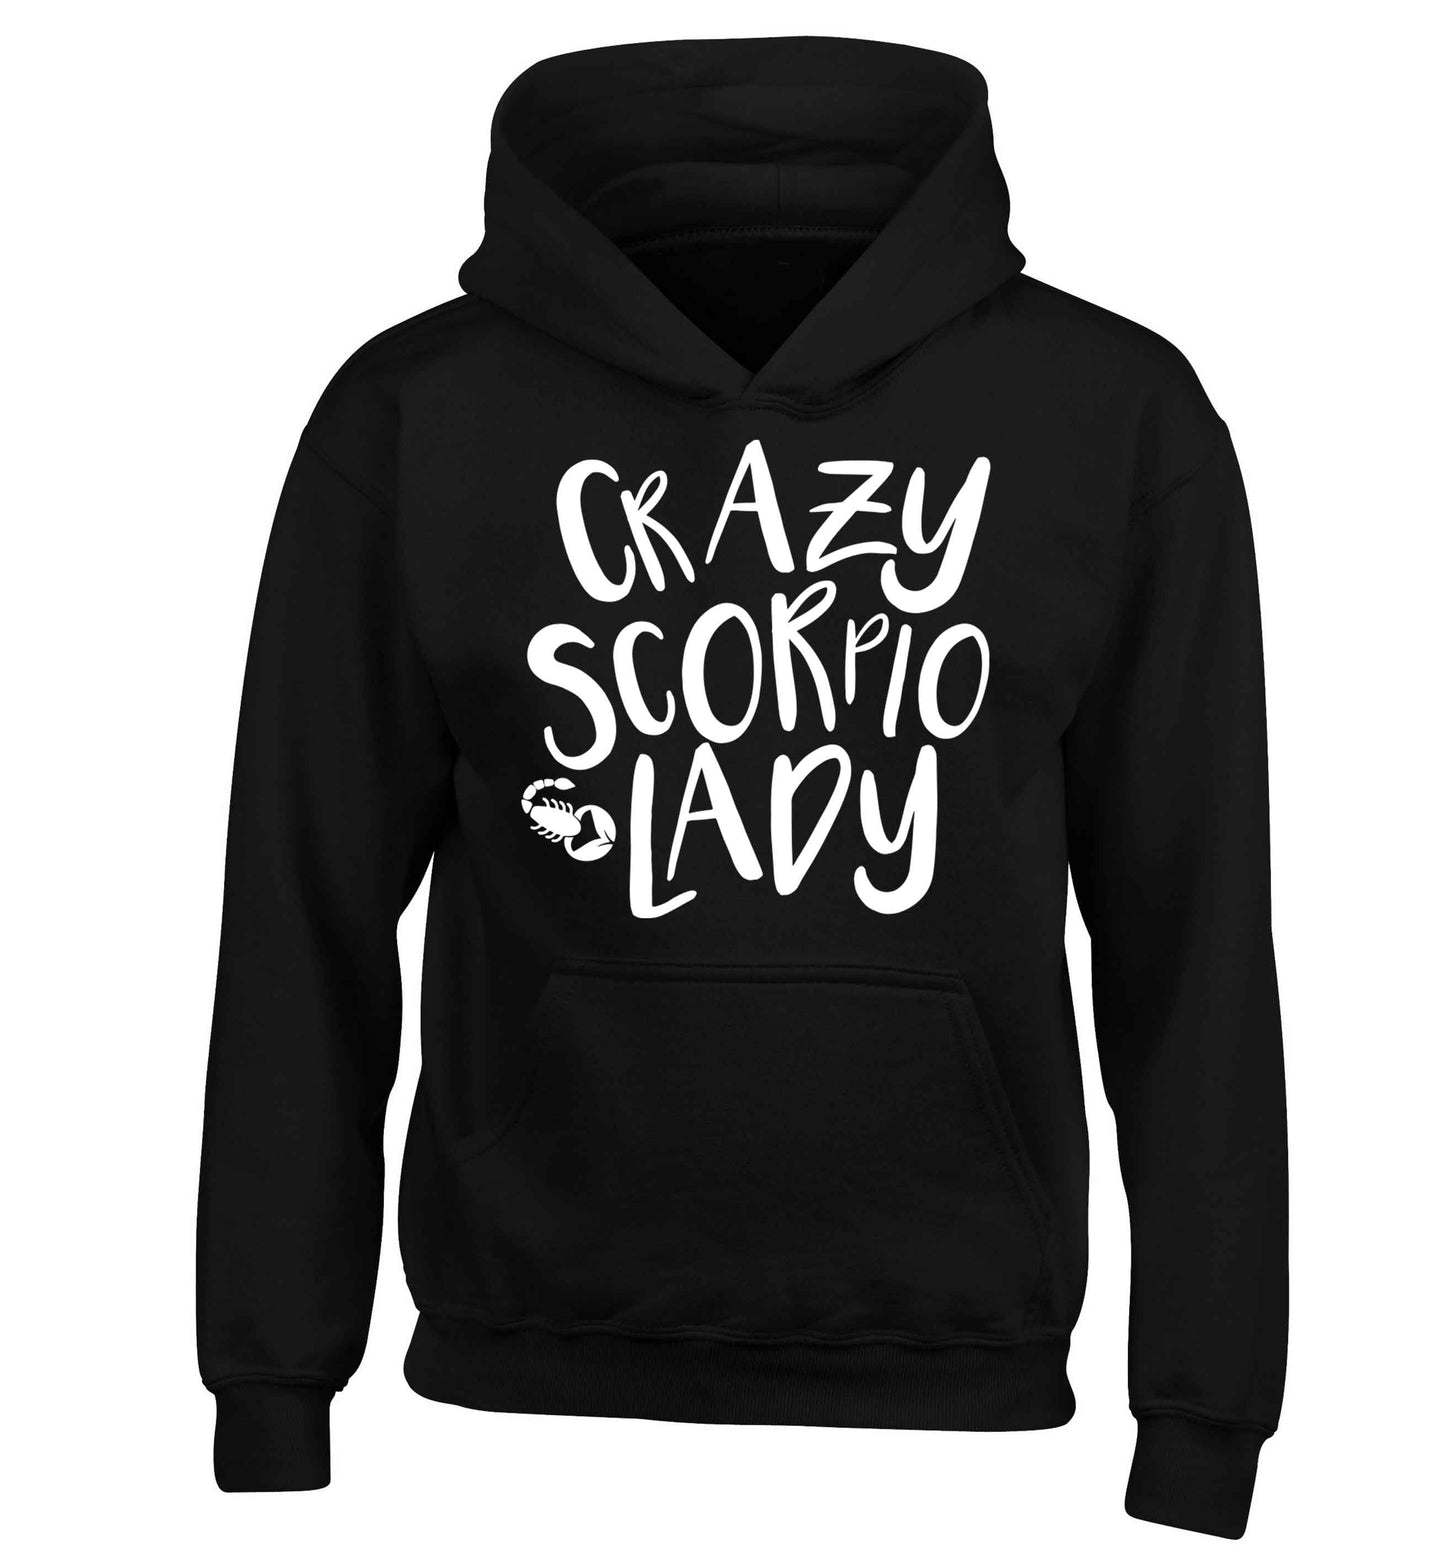 Crazy scorpio lady children's black hoodie 12-13 Years